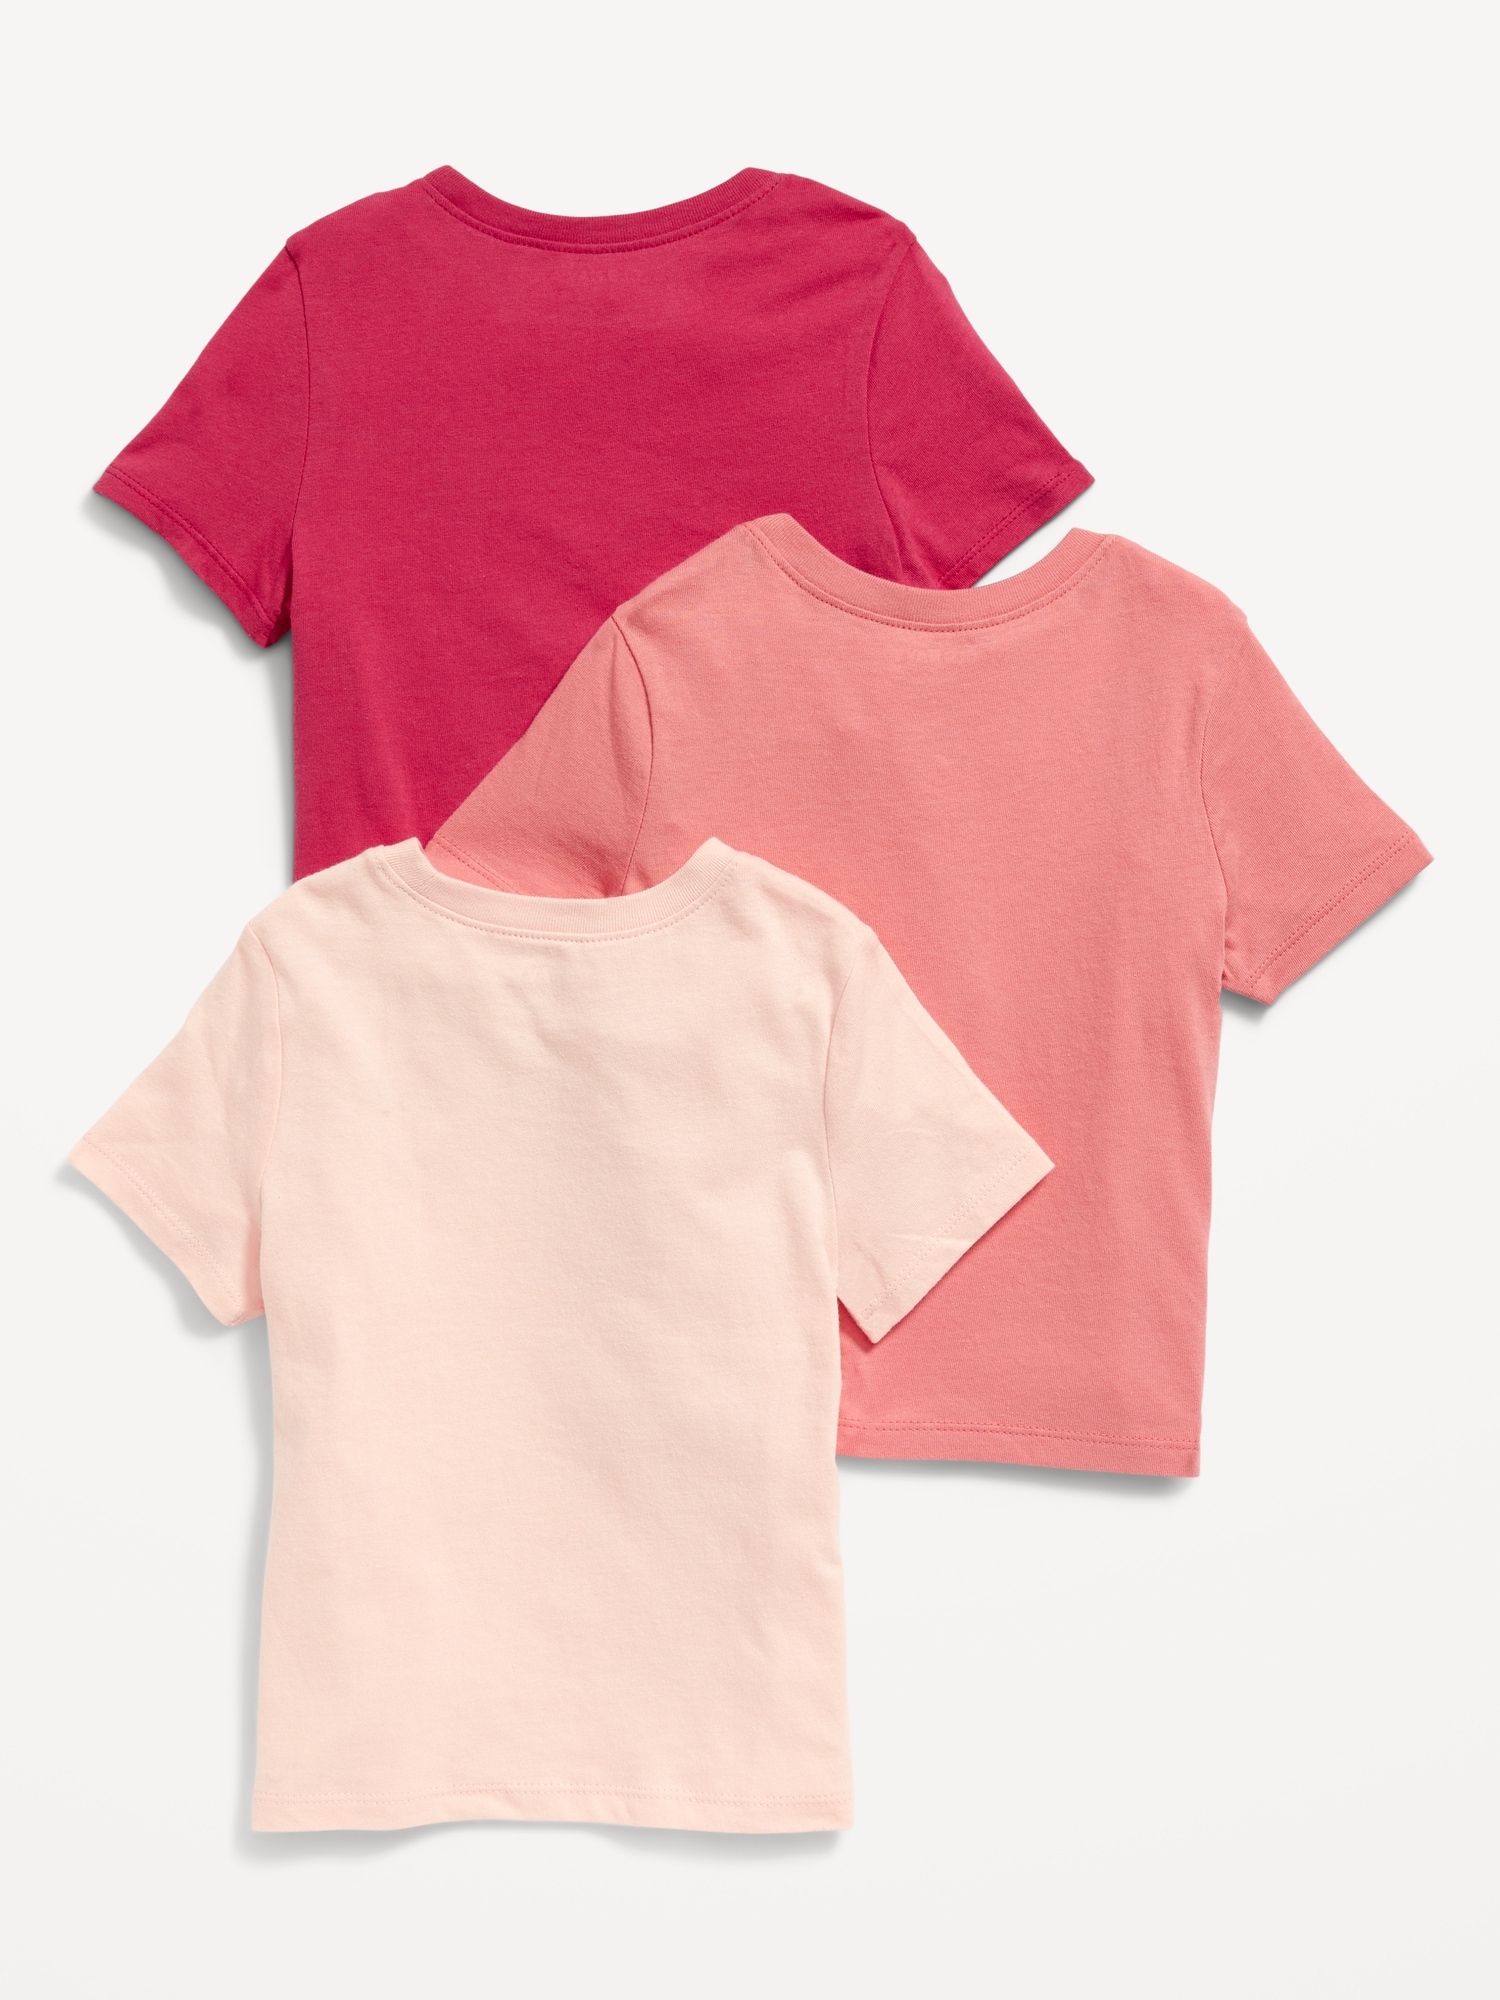 Unisex 3-Pack Short-Sleeve T-Shirt for Toddler